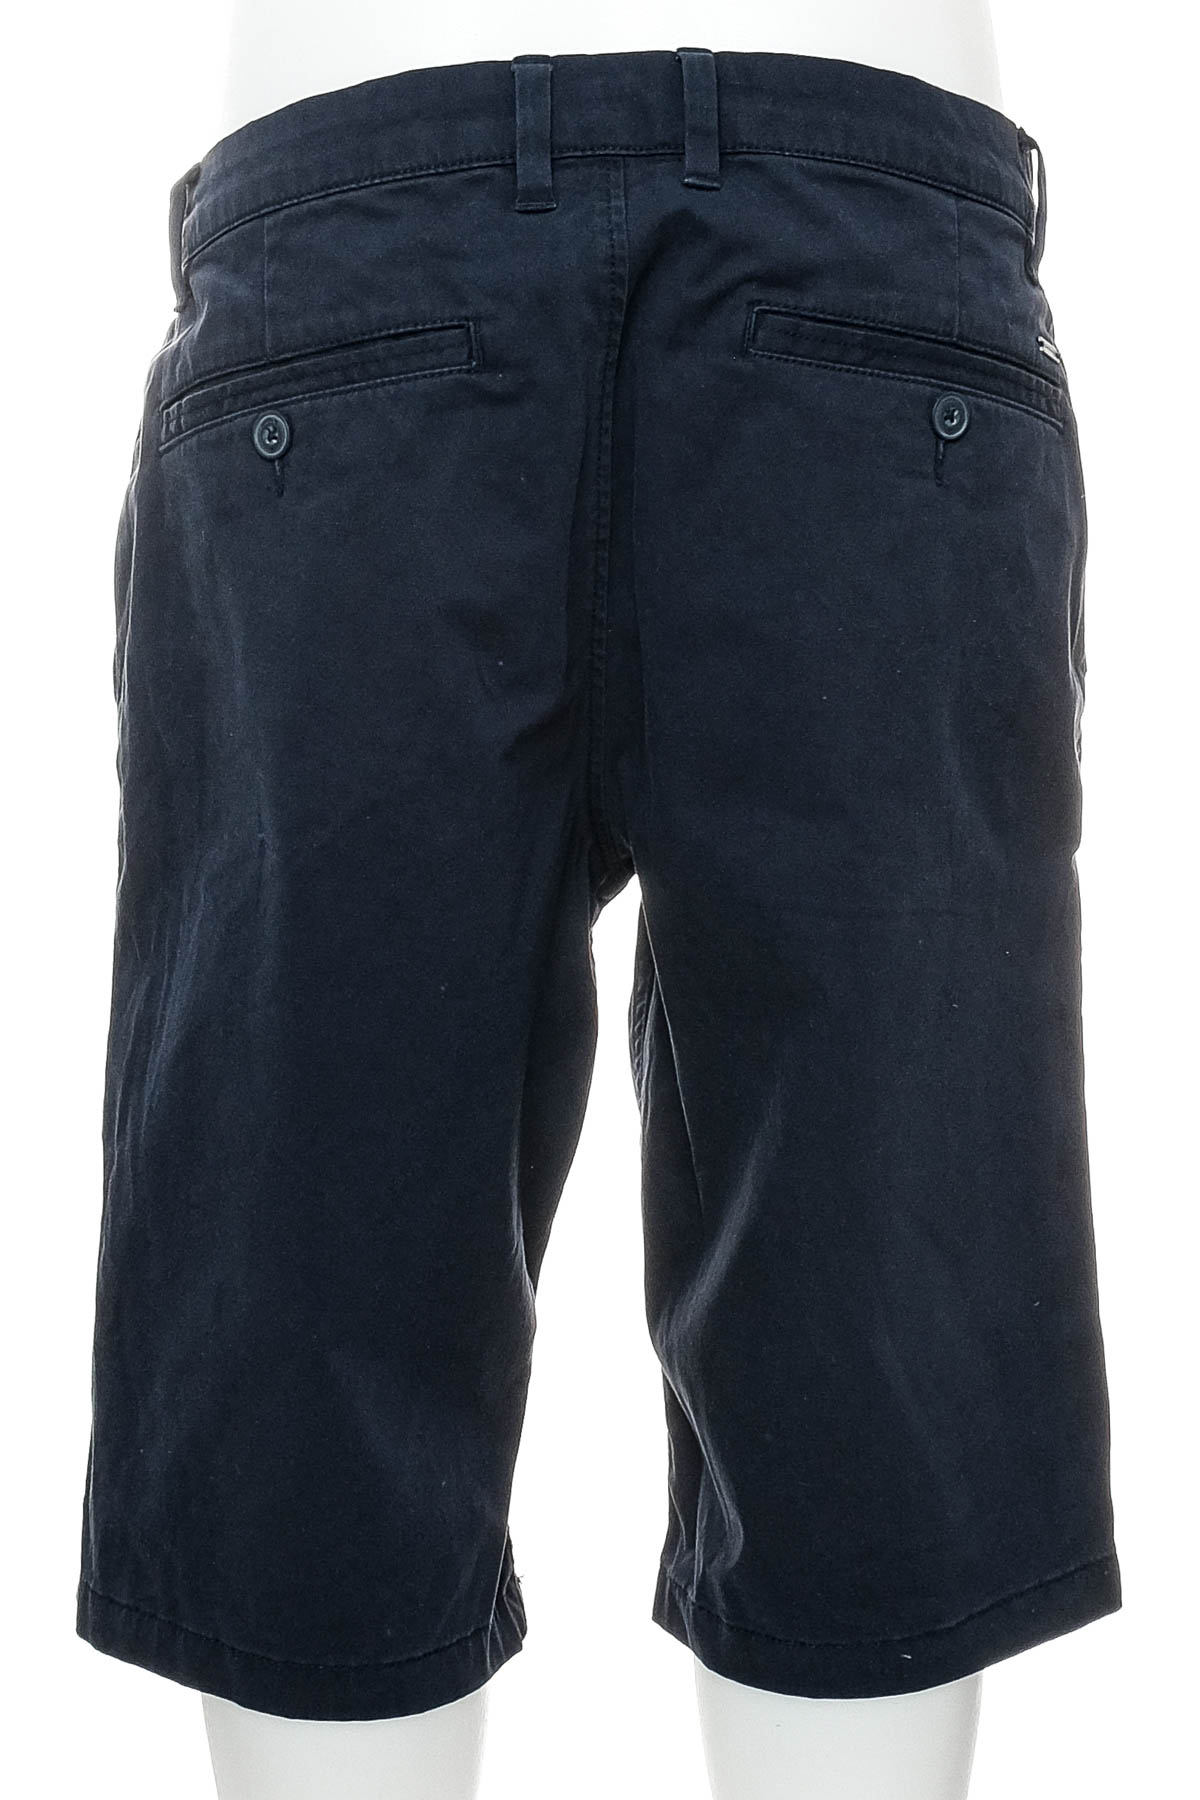 Men's shorts - TOM TAILOR - 1